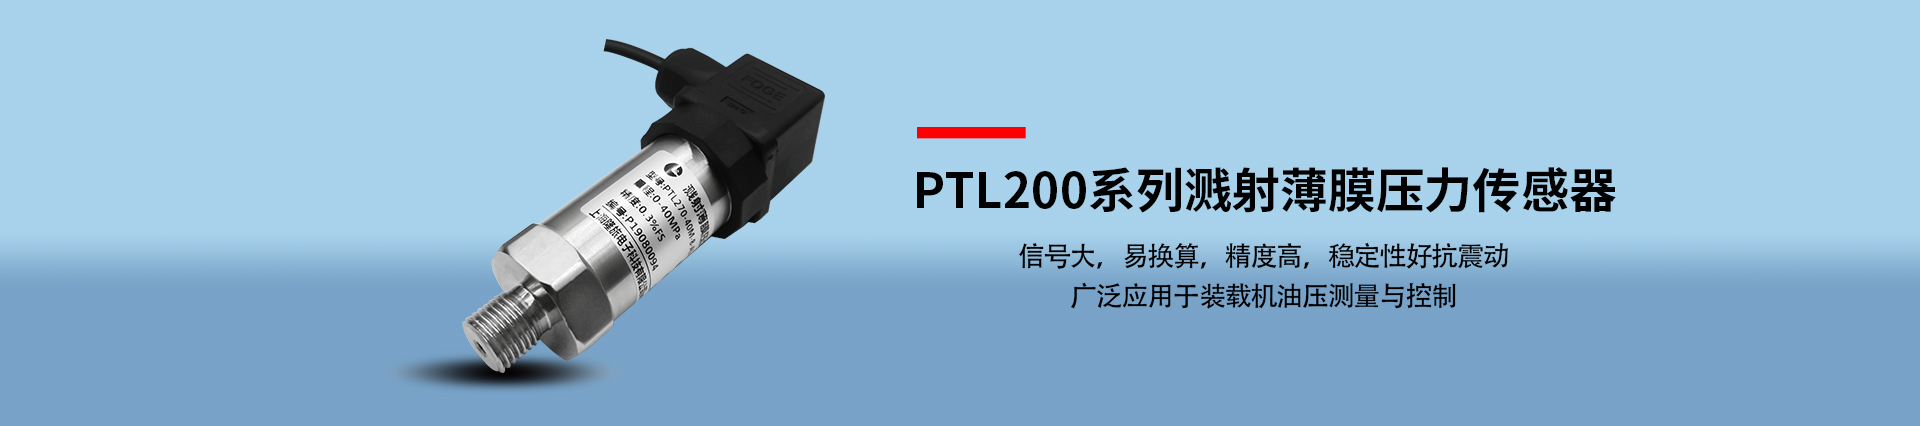 PTL200系列溅射薄膜压力传感器